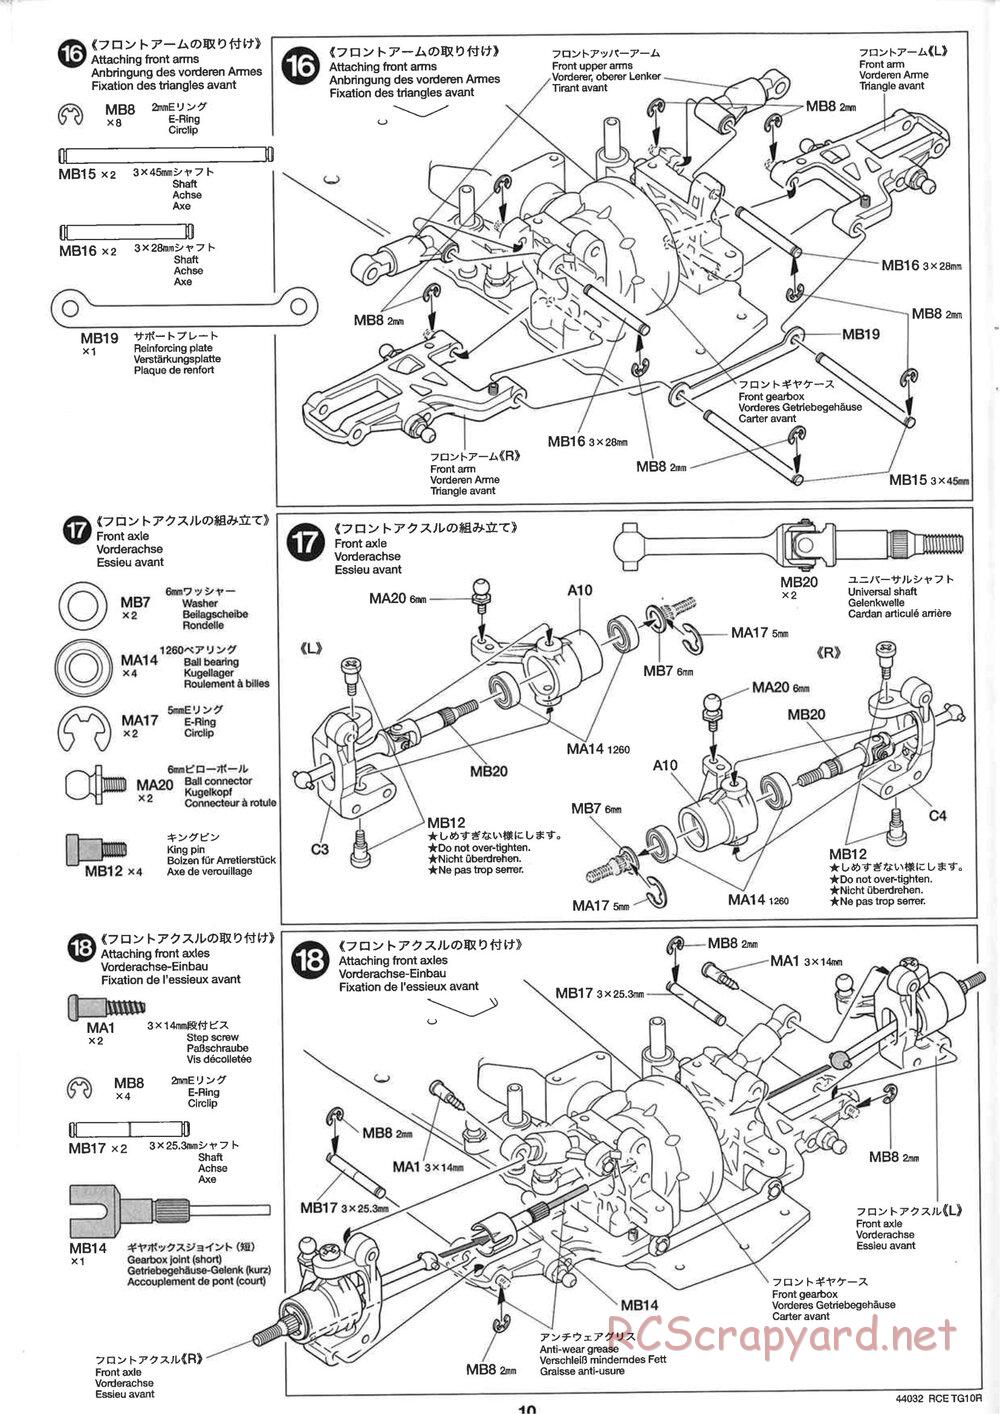 Tamiya - TG10R Chassis - Manual - Page 10